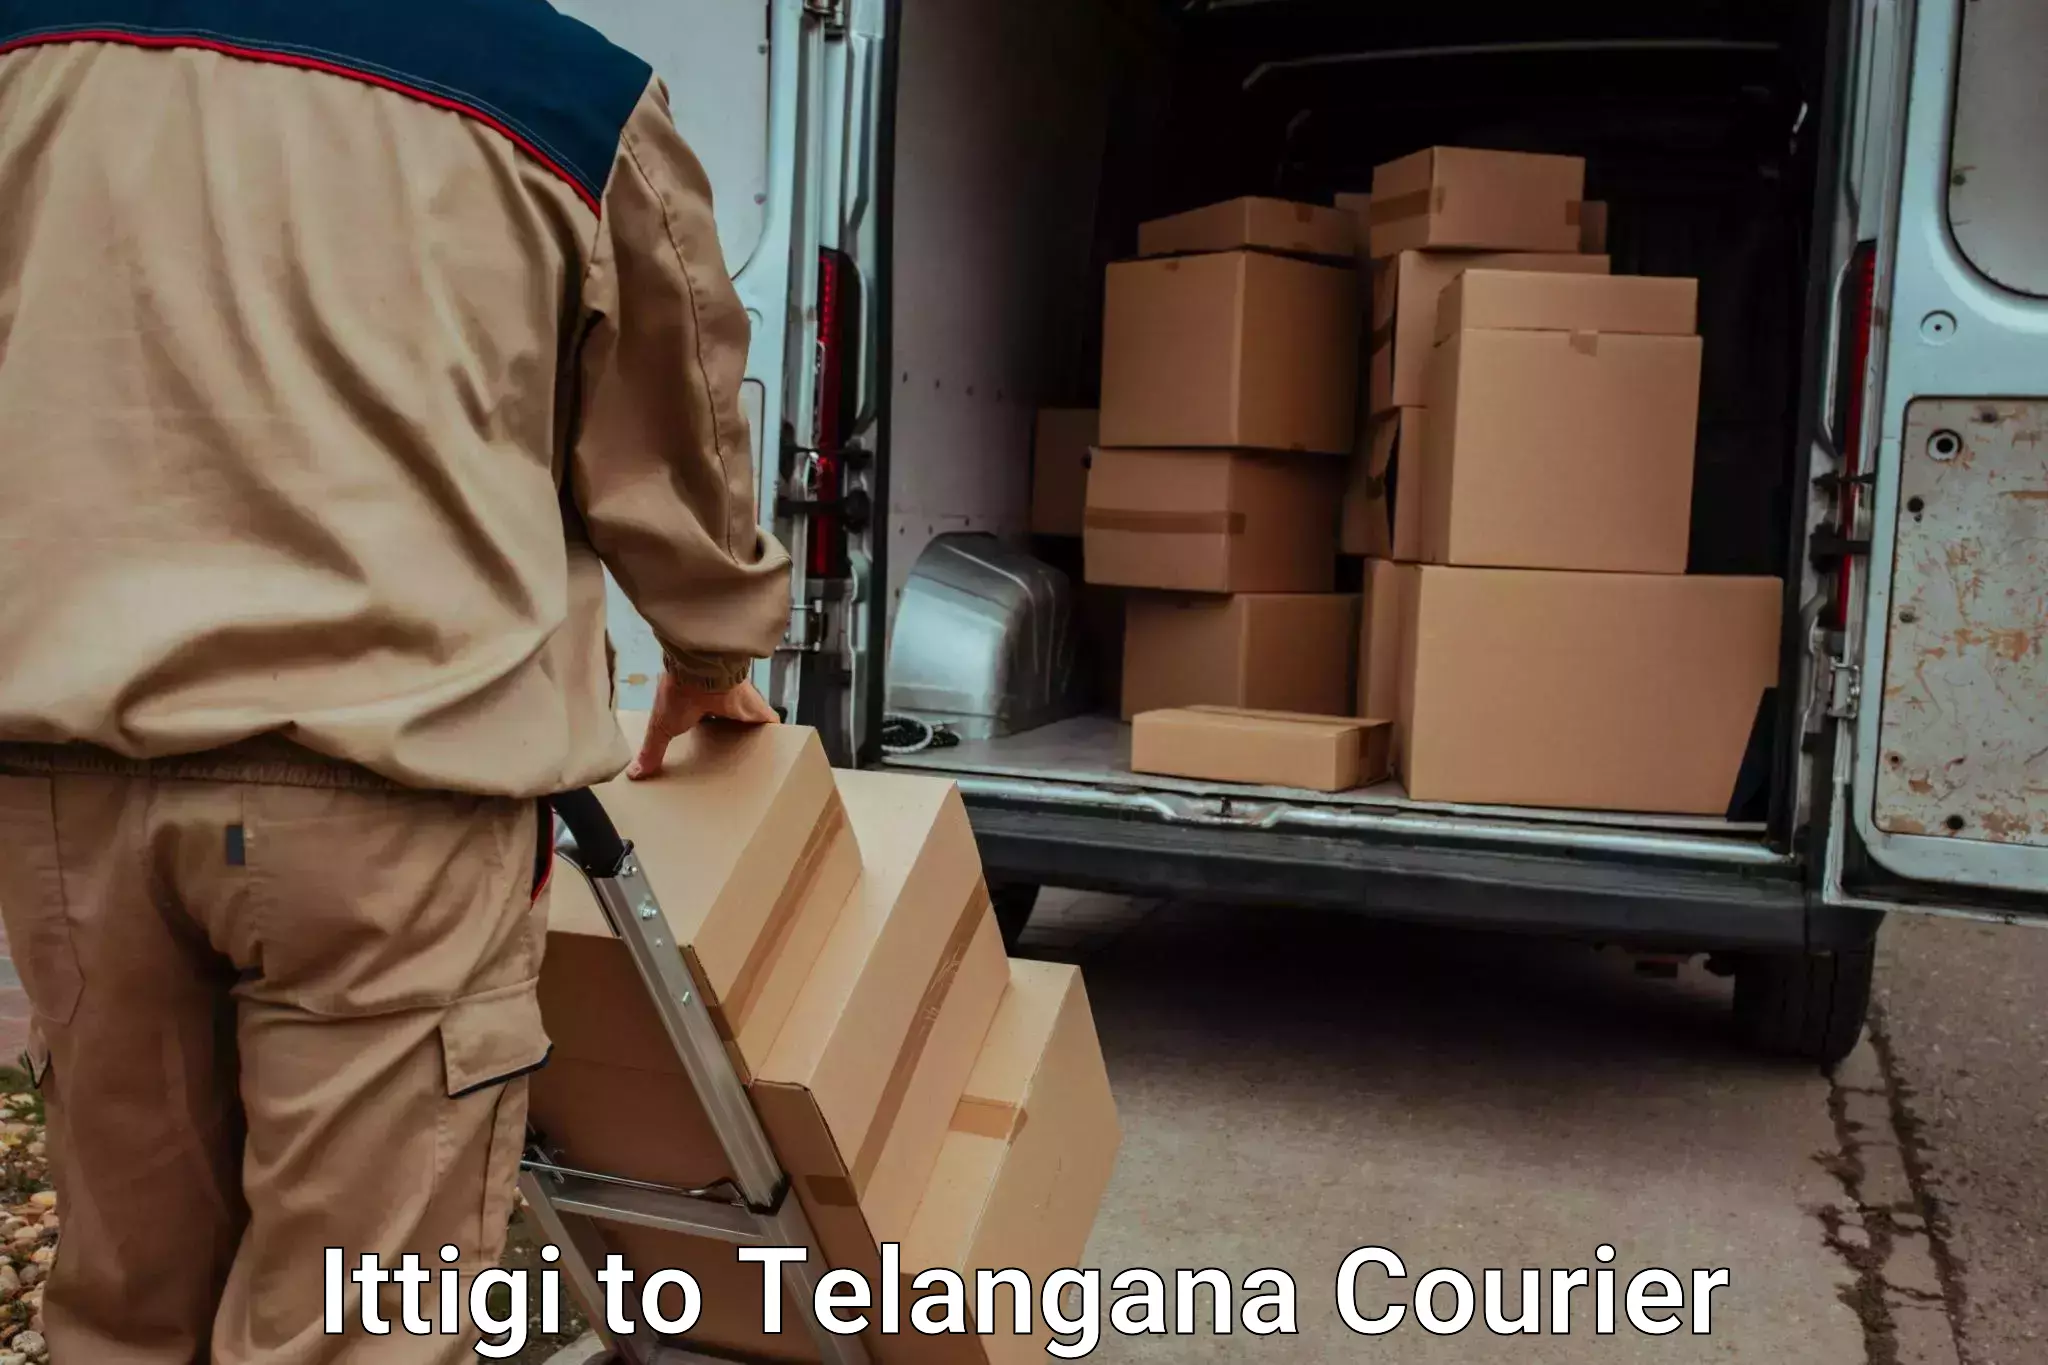 Automated luggage transport Ittigi to Telangana